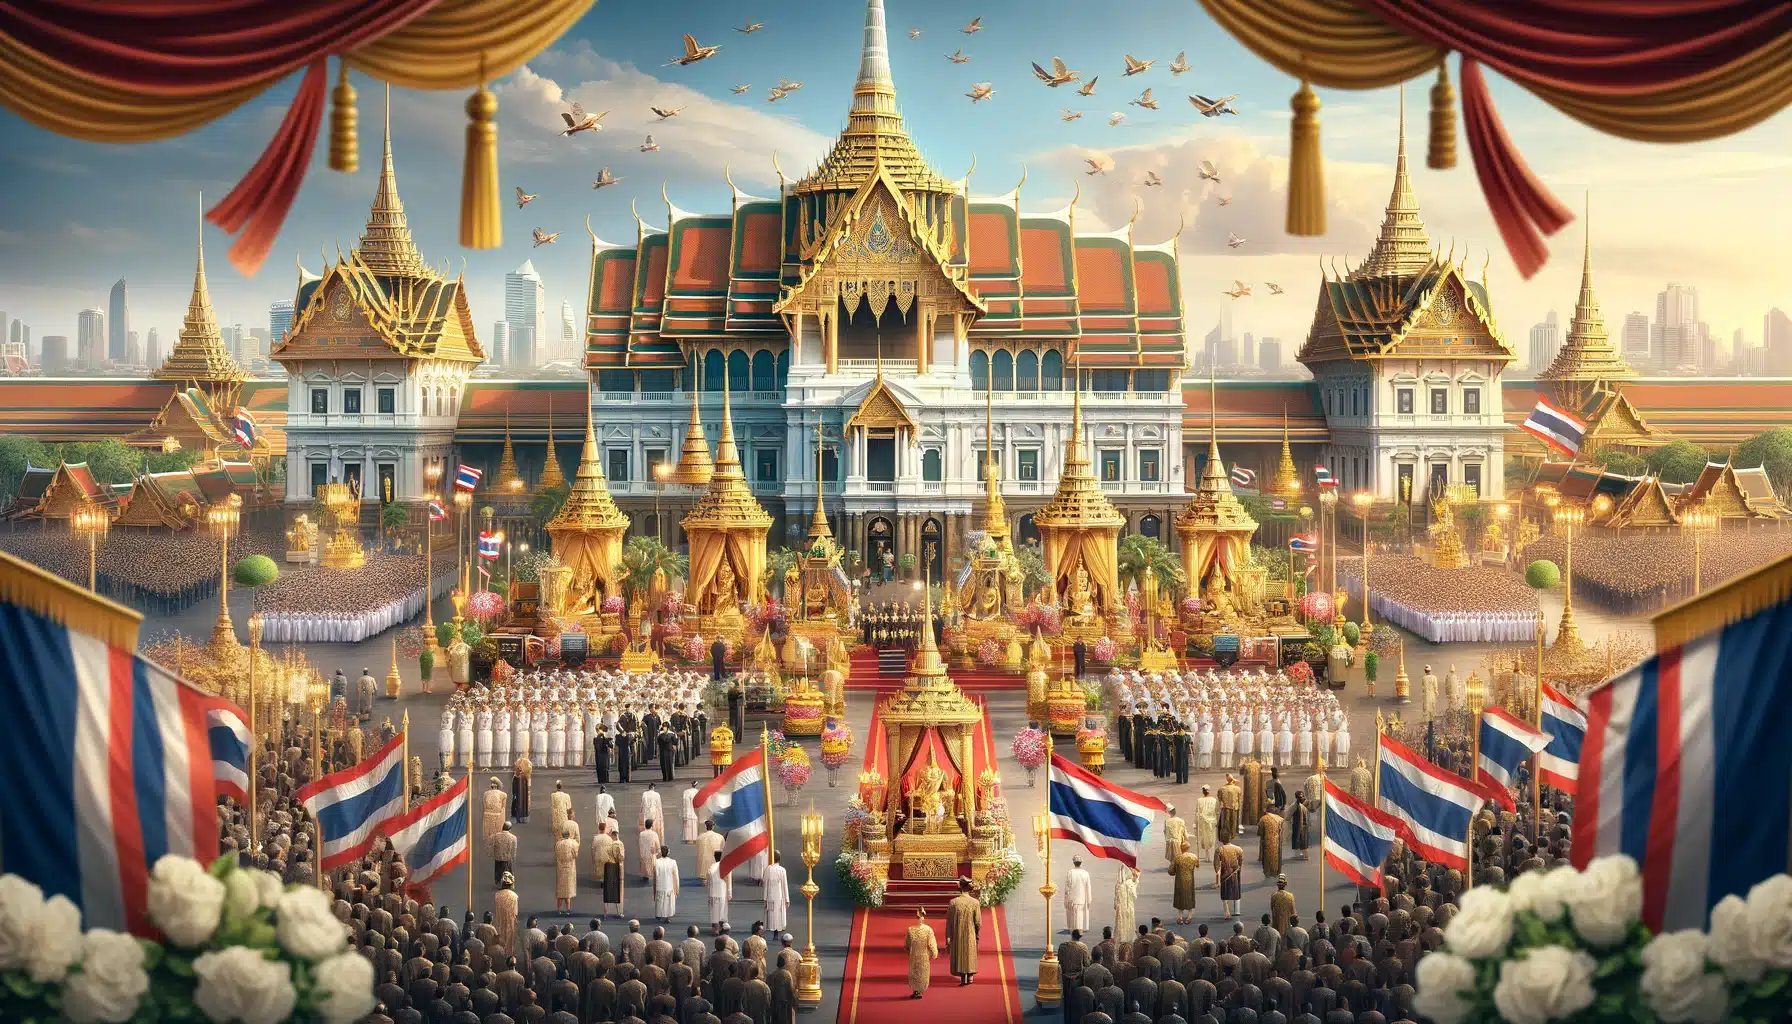 ภาพวาดแนวนอนเกี่ยวกับวันฉัตรมงคลในประเทศไทย มีพระบรมมหาราชวังในกรุงเทพมหานครประดับด้วยเครื่องประดับทองและธงชาติไทย ภายใต้ท้องฟ้าสีฟ้าสดใส ผู้คนในชุดไทยดั้งเดิมกำลังแสดงความเคารพและเฉลิมฉลอง ภาพนี้สะท้อนถึงความสำคัญทางประวัติศาสตร์และวัฒนธรรมของพระราชพิธีบรมราชาภิเษก บรรยากาศที่แสดงออกมามีความเป็นเทศกาลและเคารพในเวลาเดียวกัน